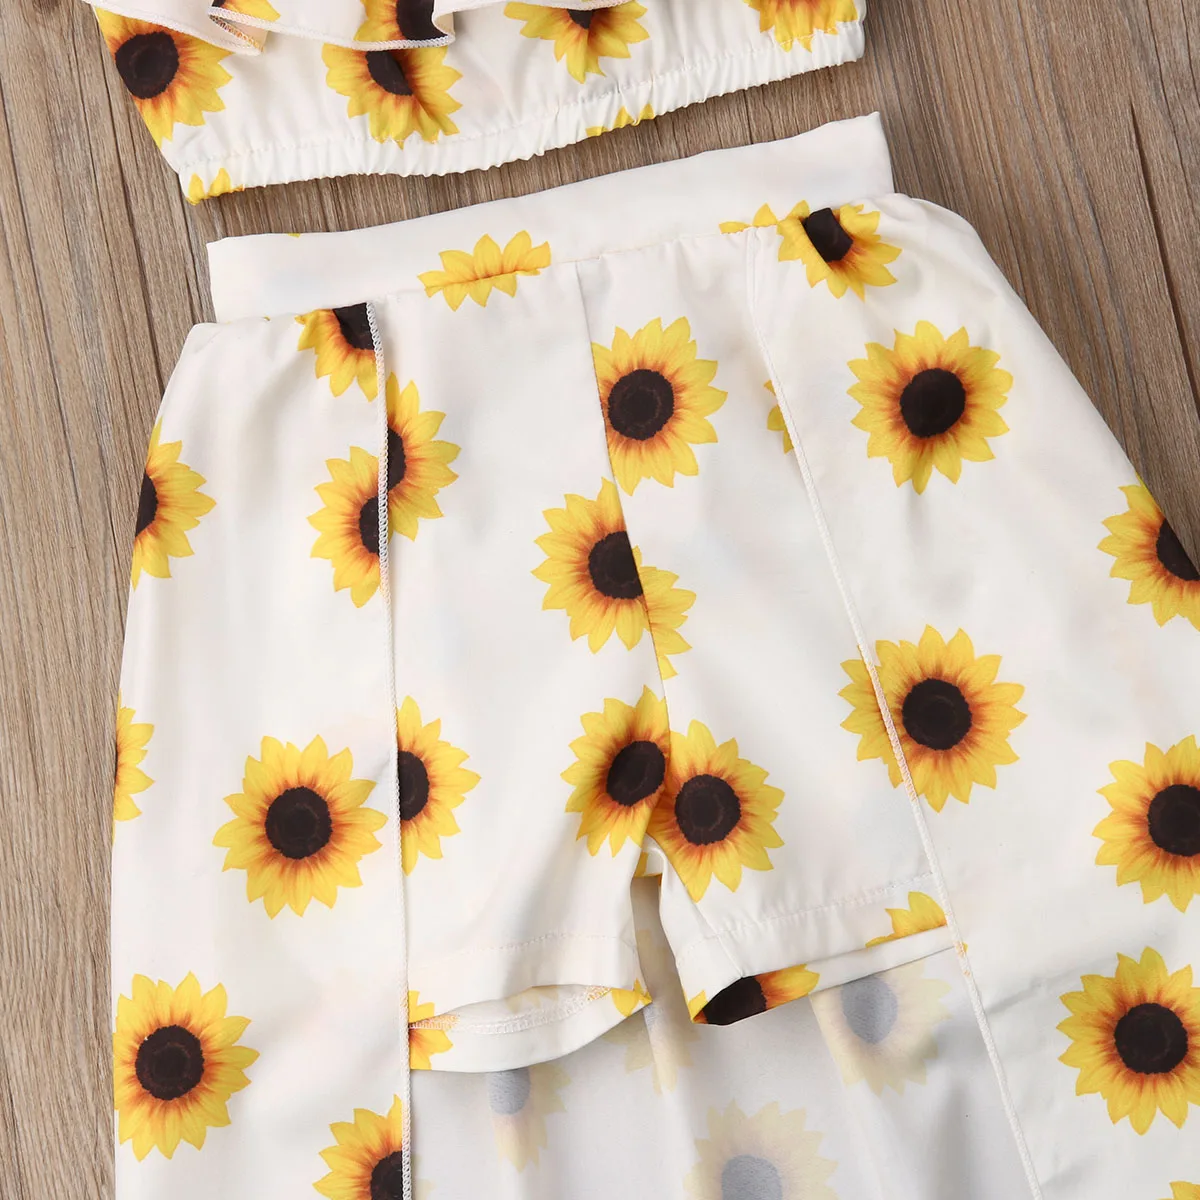 Toddler Kid Baby Girls Sunflowers Halter Crop Top T-Shirt Plaid Ruffled Skirt Headband 3Pcs Summer Outfit